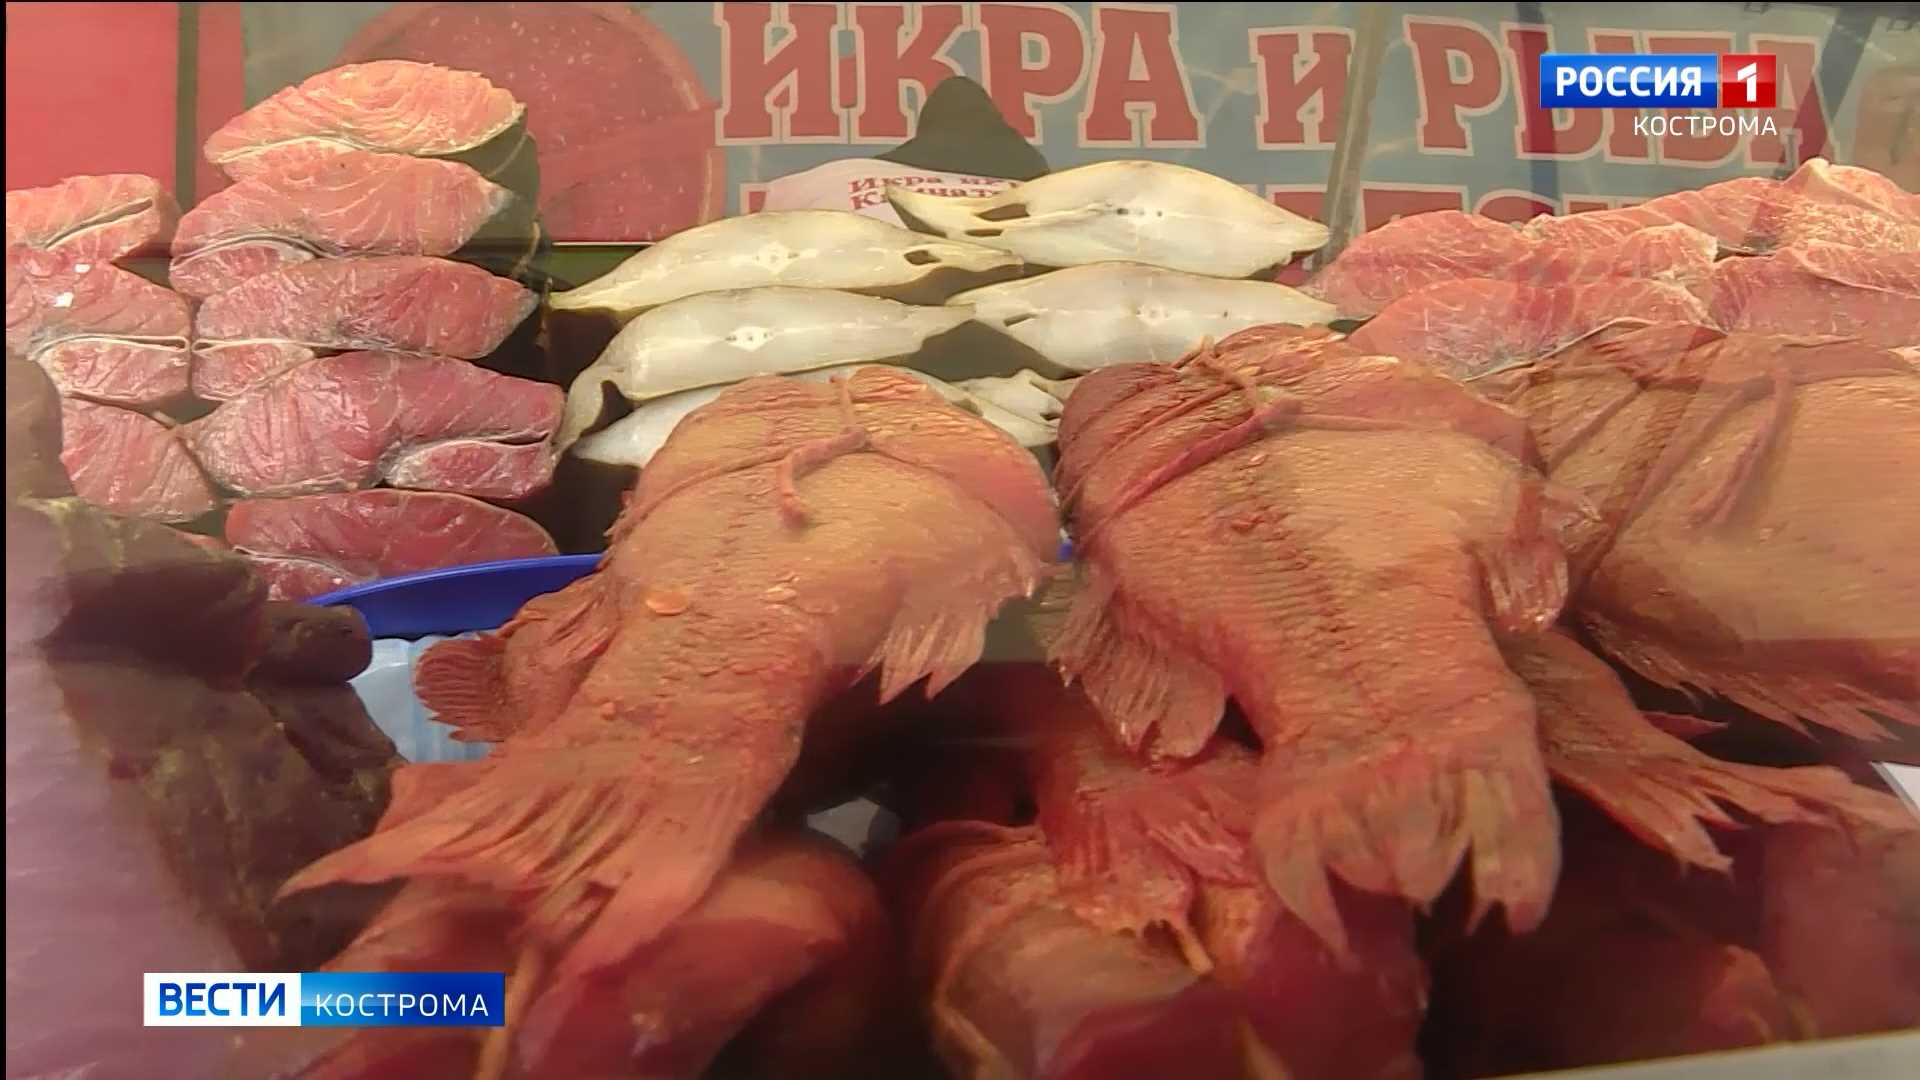 Выставка-ярмарка рыбных деликатесов открылась в Костроме